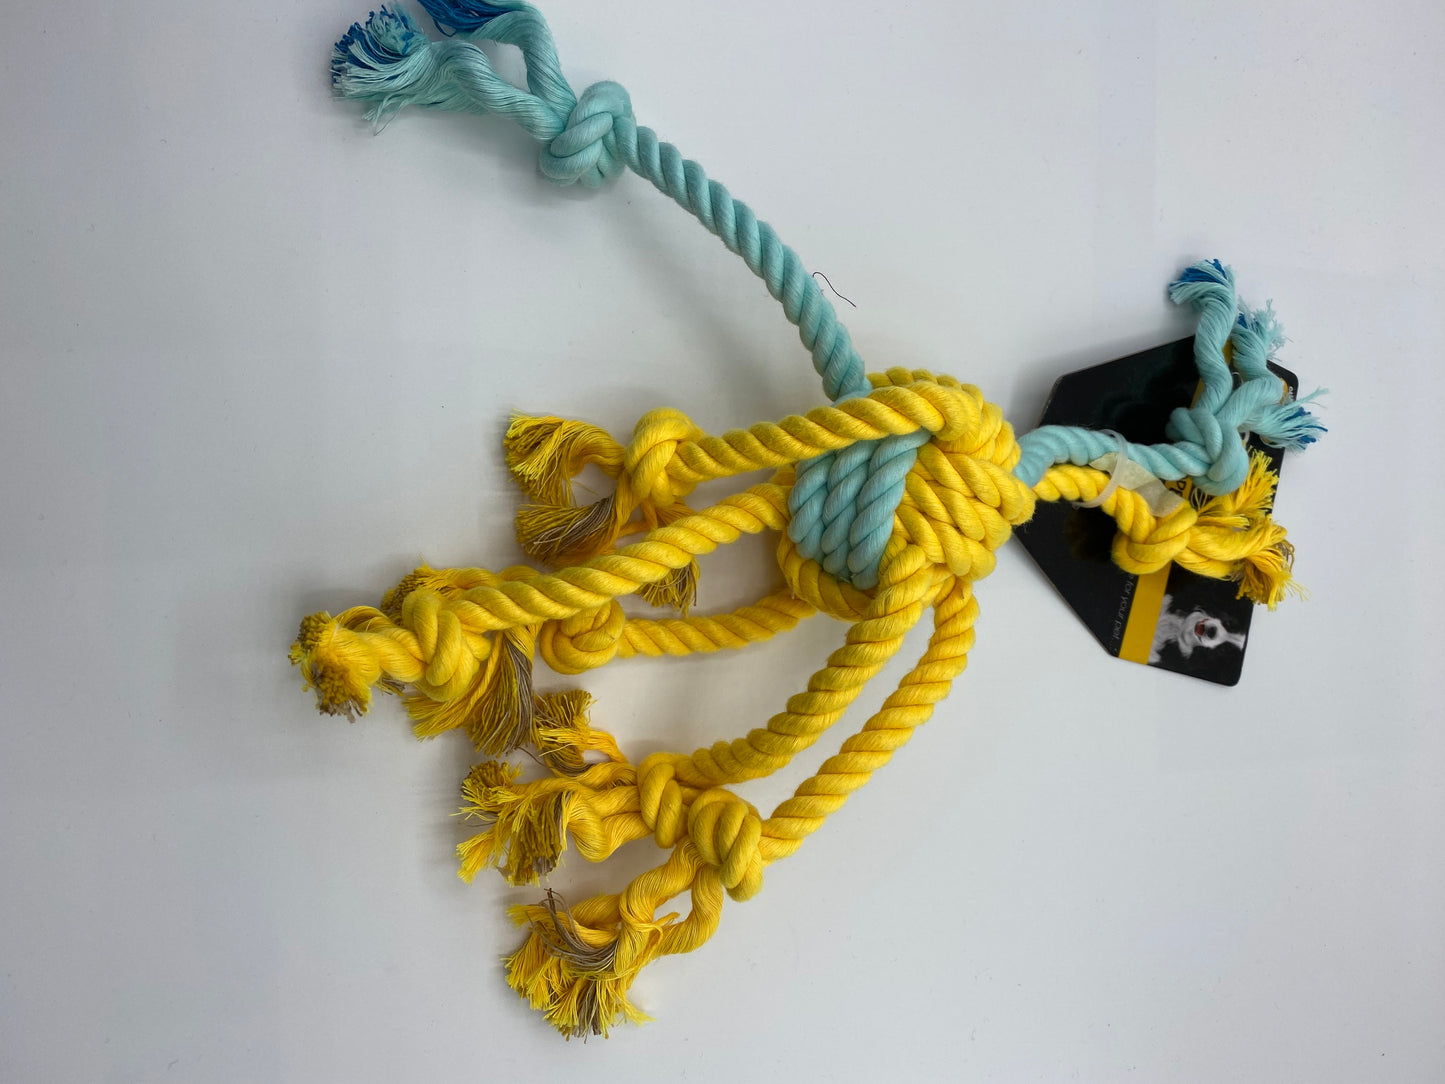 Spider Style Rope Tug Dog Toy